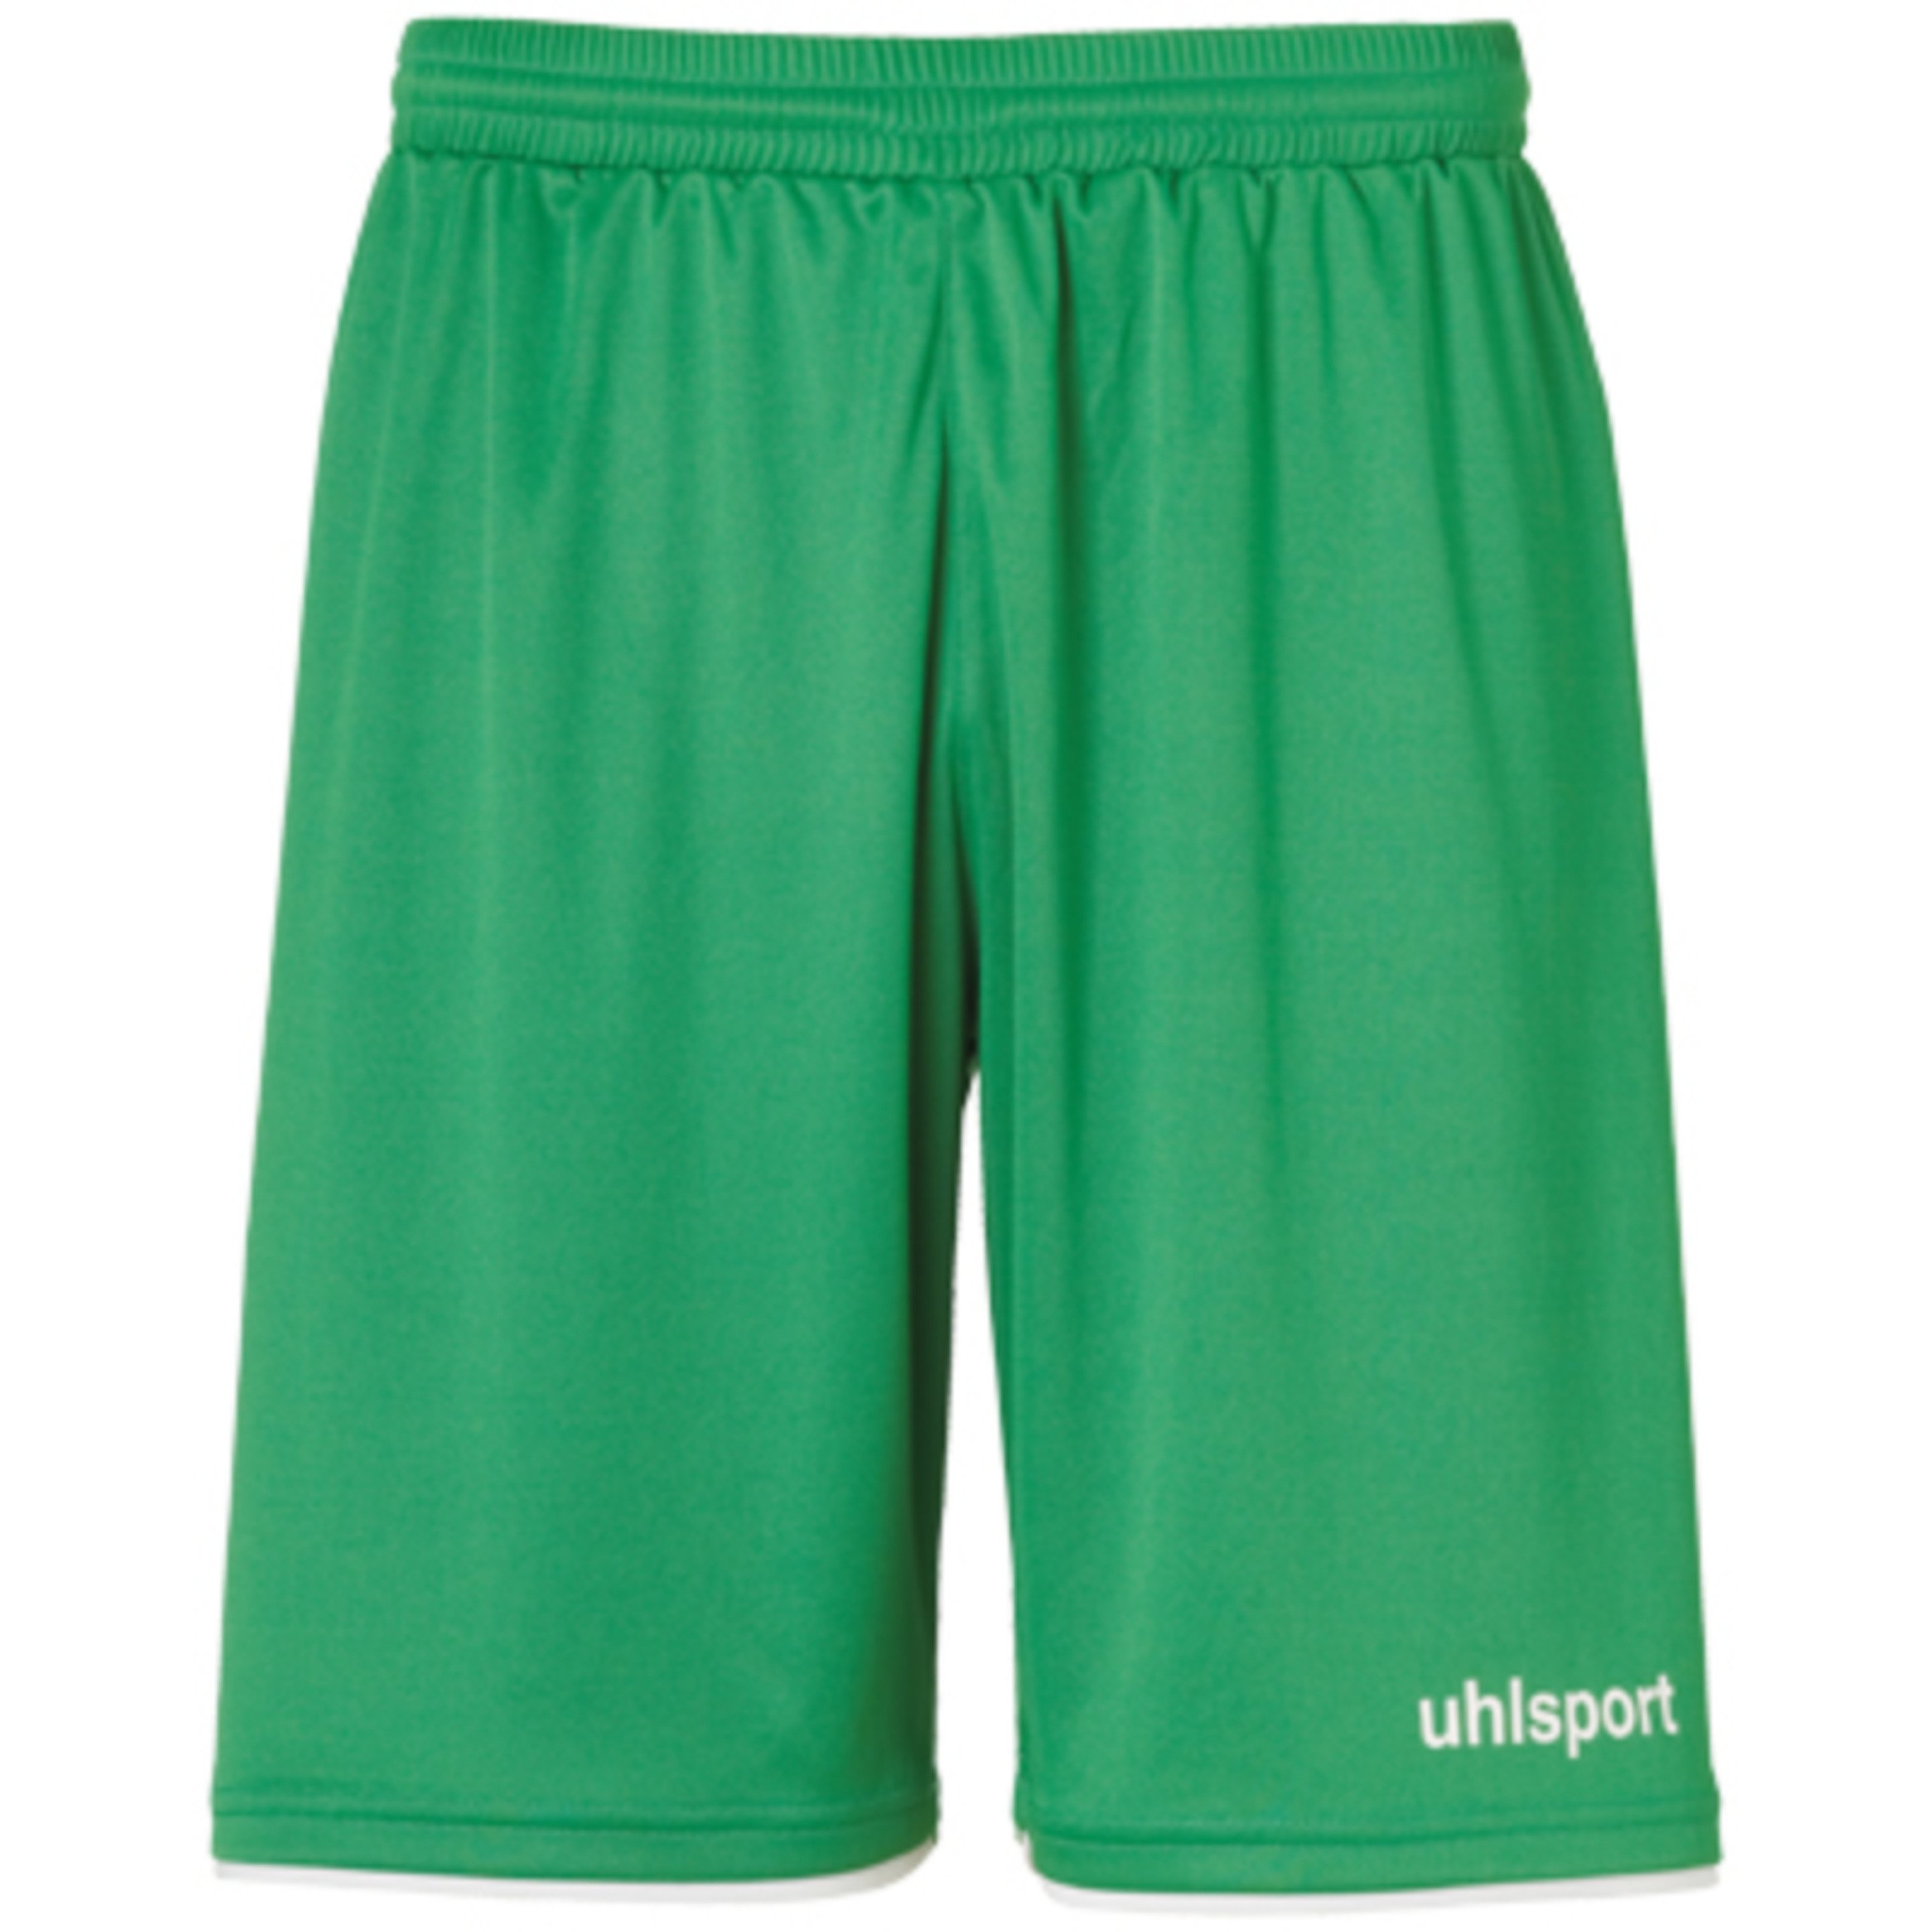 Club Shorts Verde/blanco Uhlsport